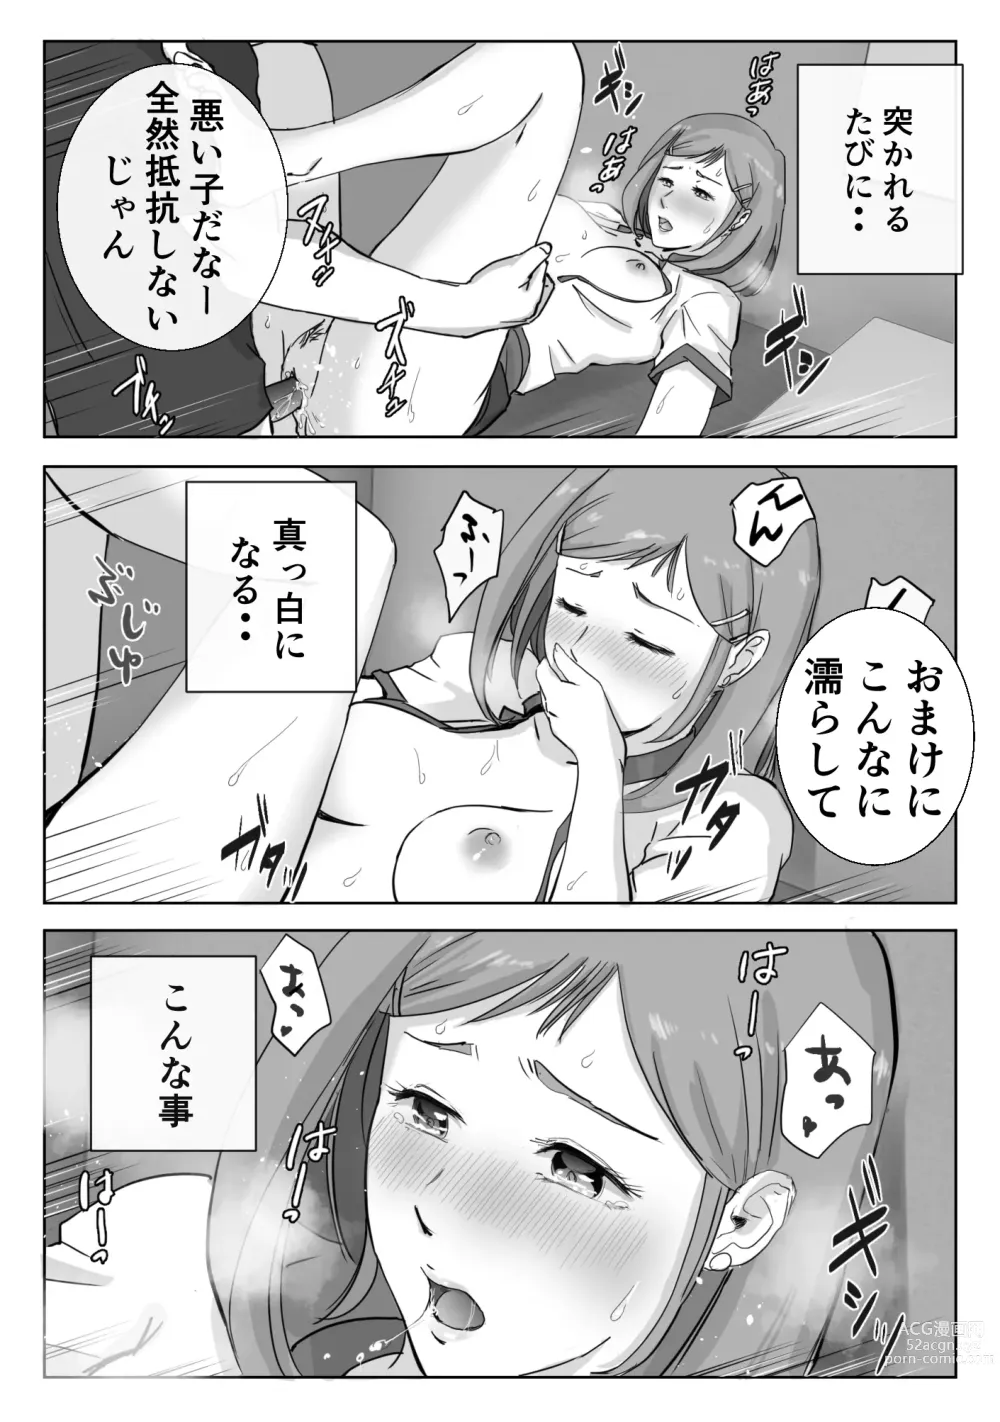 Page 29 of doujinshi Ano Hi no Uso 3